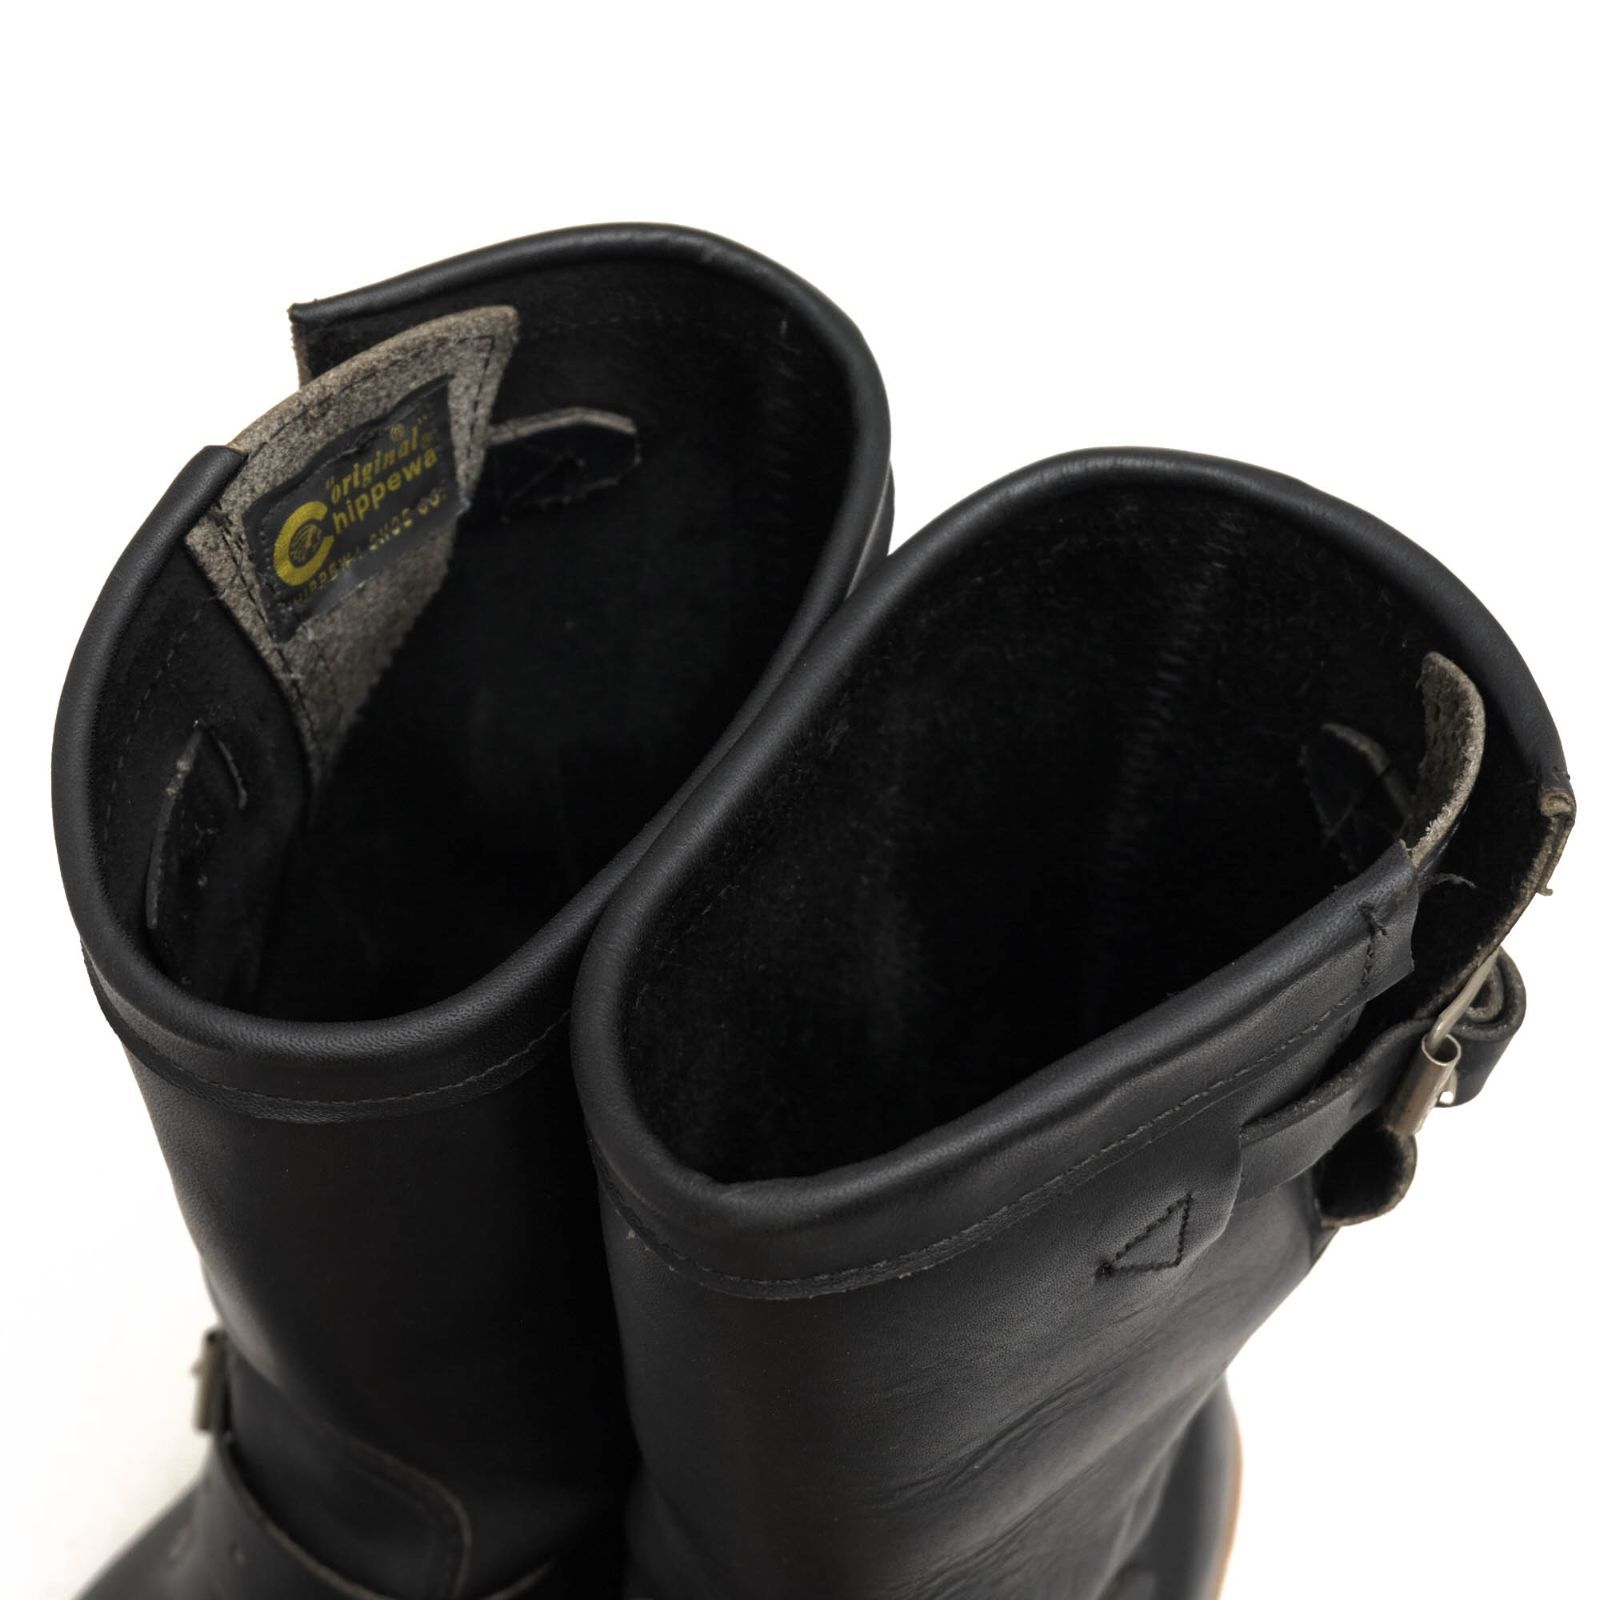 靴/シューズチペワ／CHIPPEWA エンジニアブーツ シューズ 靴 メンズ 男性 男性用レザー 革 本革 ブラック 黒  27899 11" ENGINEER BOOTS BLACK OIL Natural Leather Welt ニトリルイエロープラグ Vibramソール グッドイヤーウェルト製法